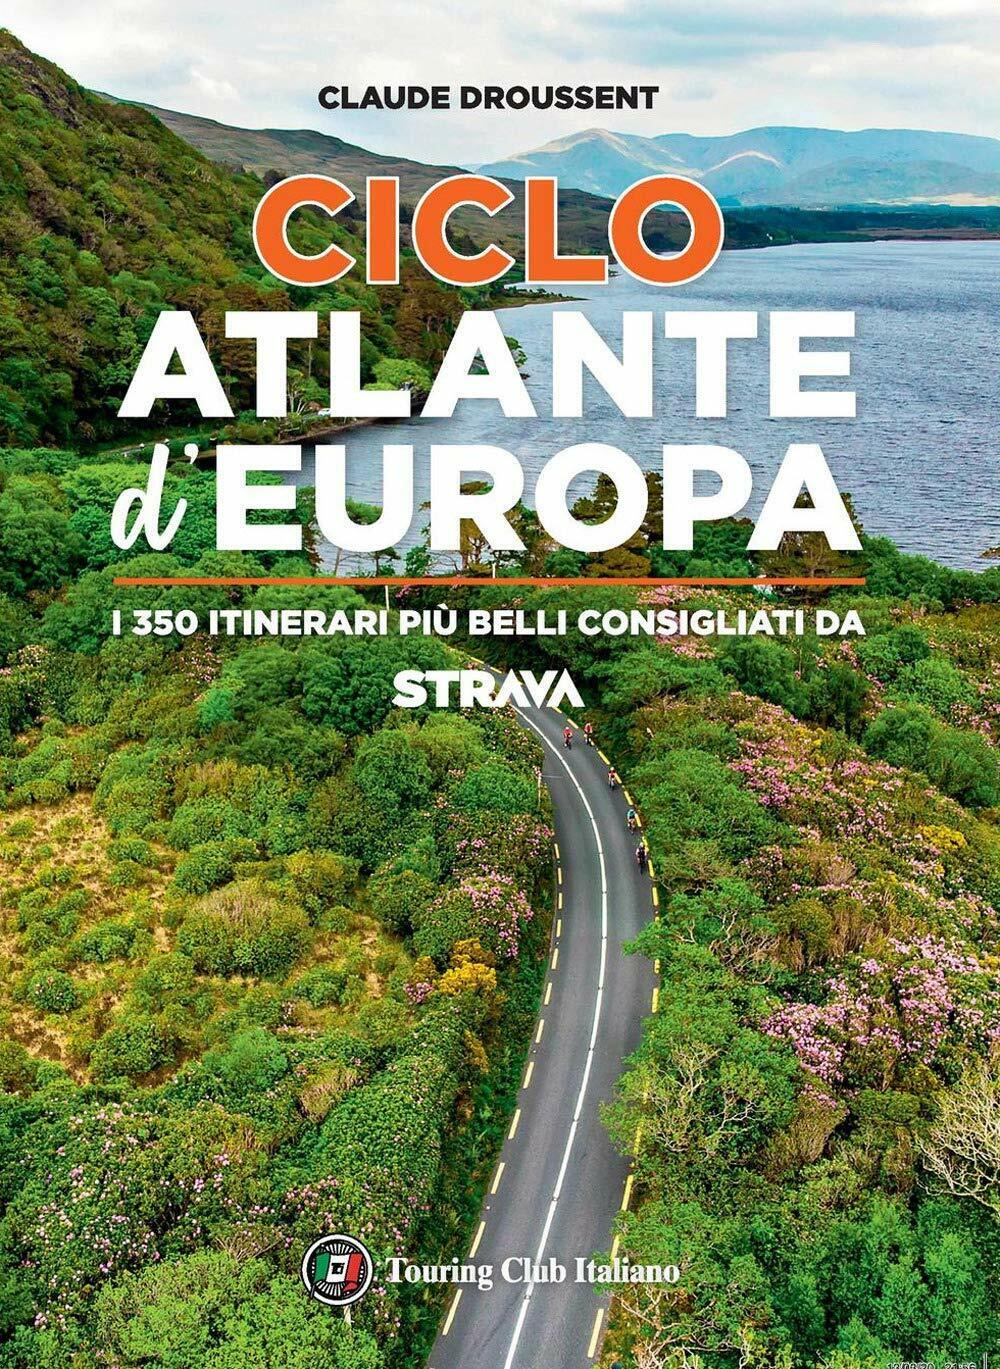 CicloAtlante d'Europa - Claude Droussent - Touring,2020